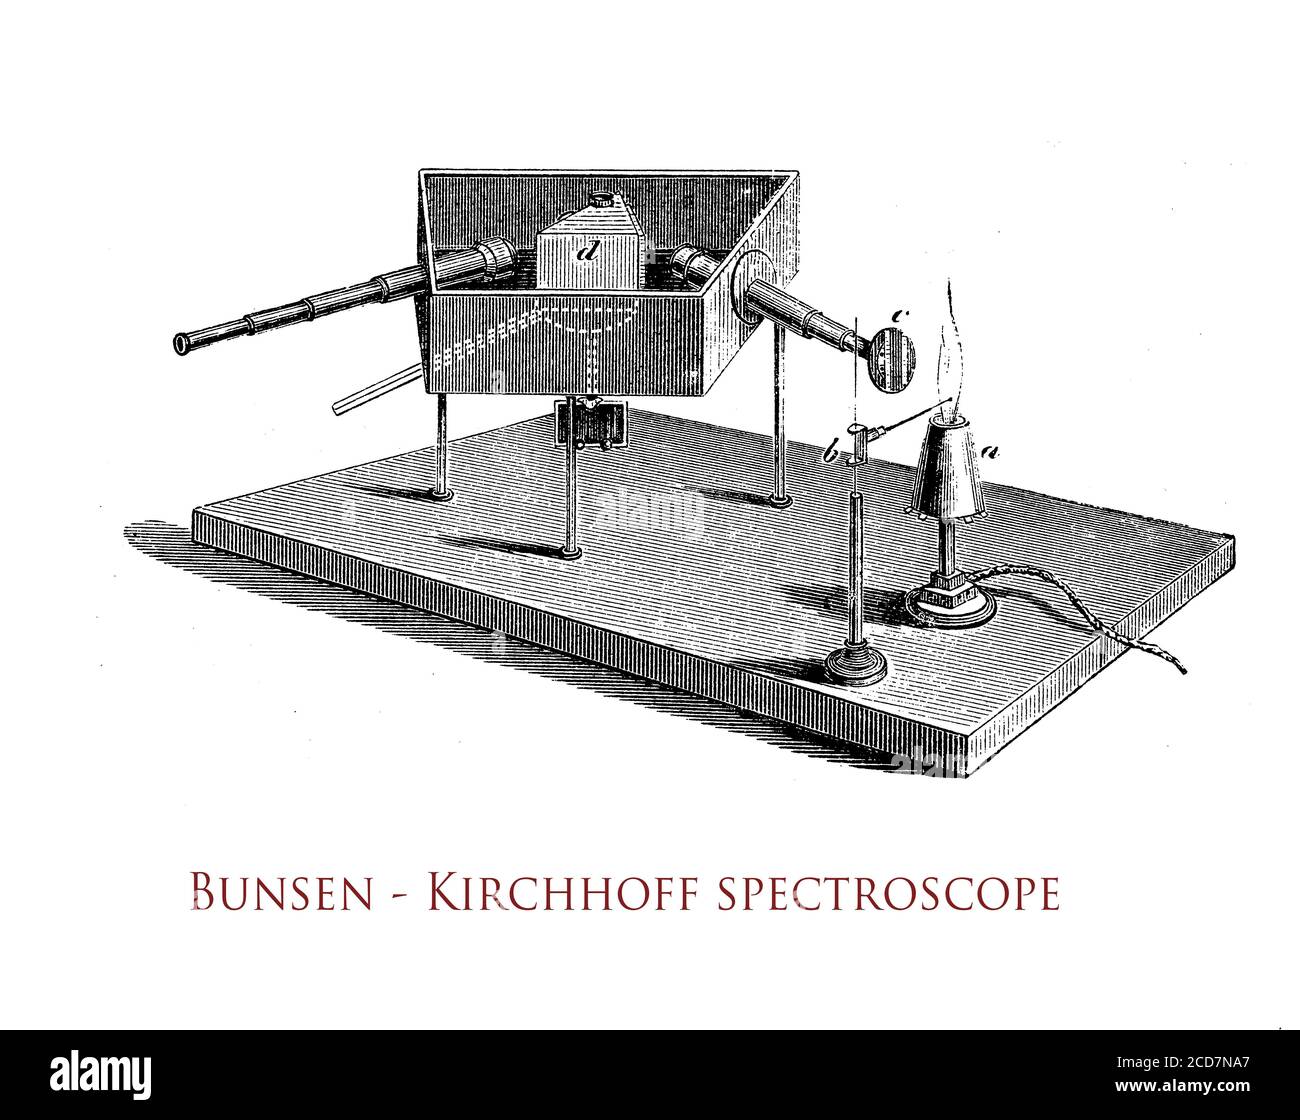 Das im 19. Jahrhundert von Bunsen und Kirchhoff entwickelte Spektroskop bietet ein hochwertiges optisches System und eine leicht ablesbare Skala, die es erlaubt, diskrete atomare Spektrallinien zu messen Stockfoto